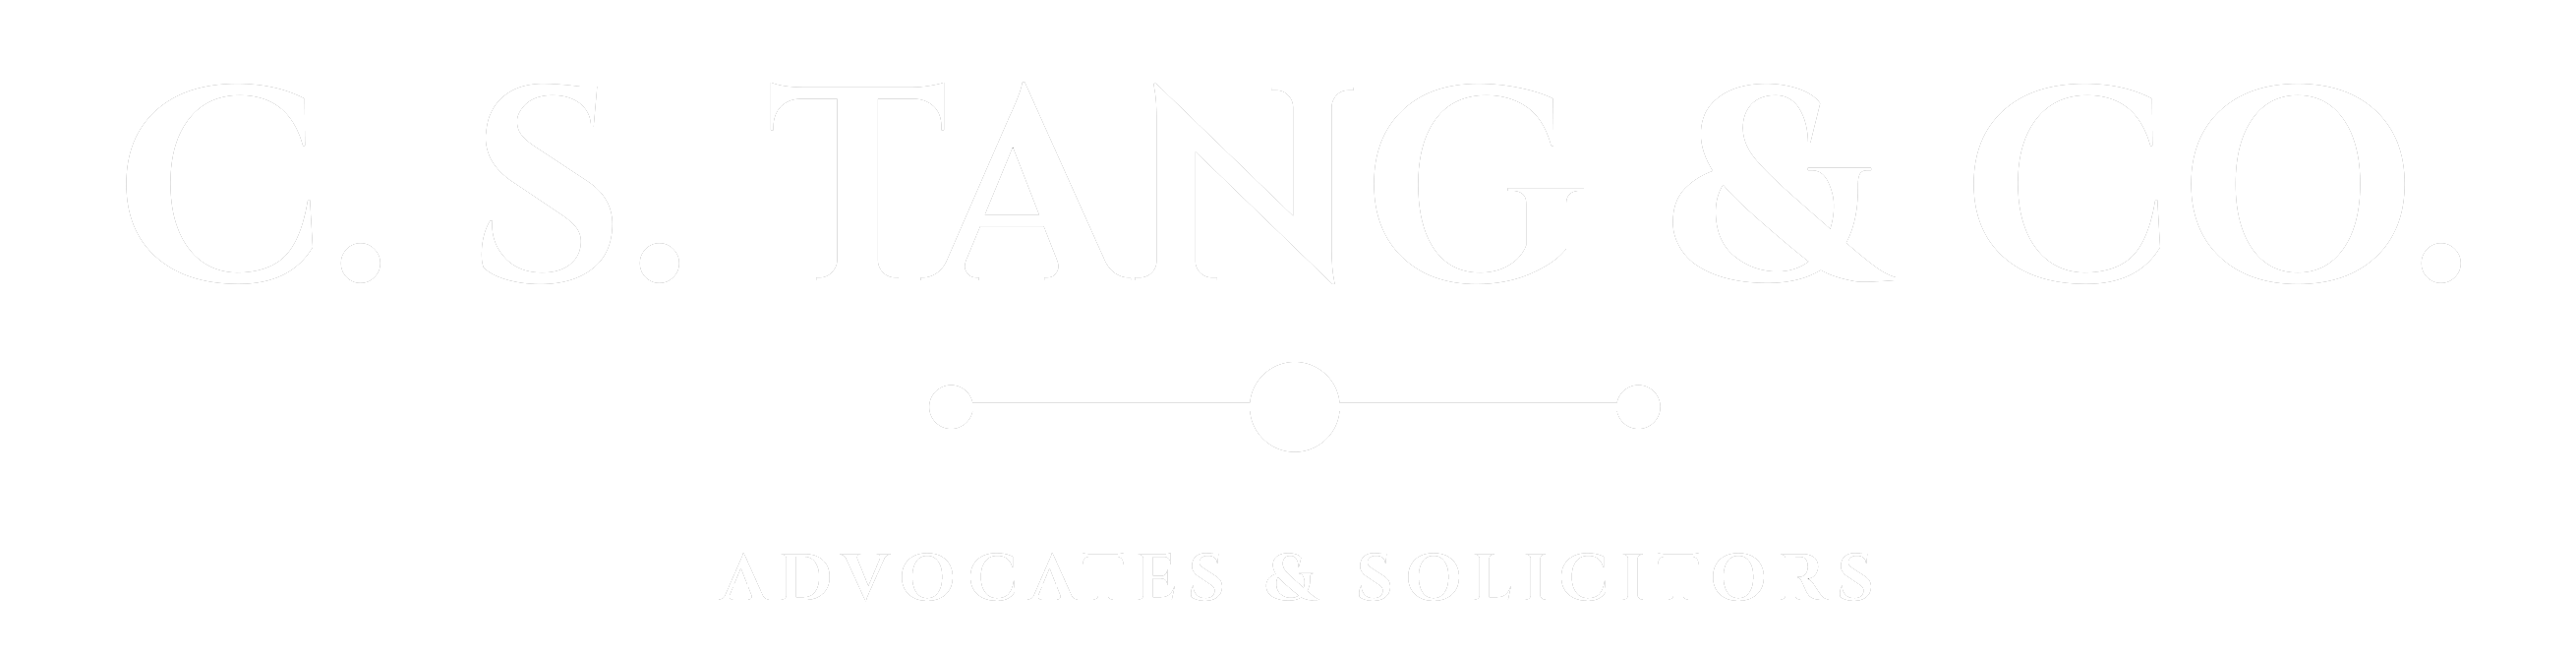 C. S. Tang & Co